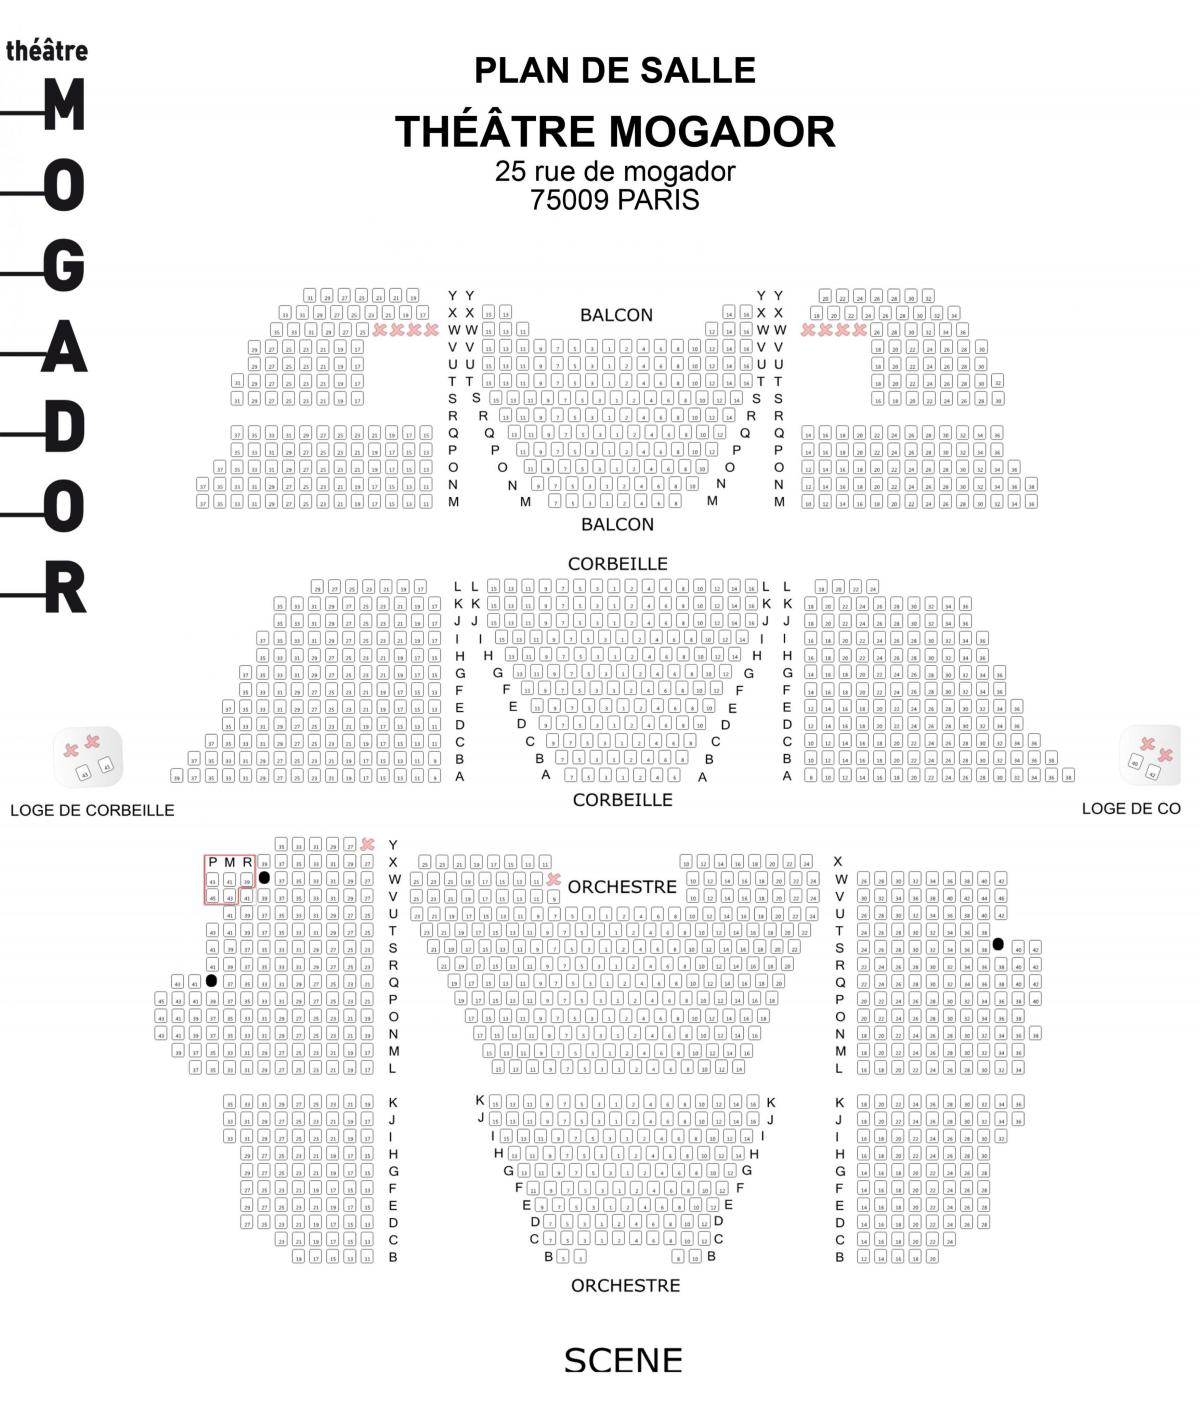 Karta kazalište Могадор